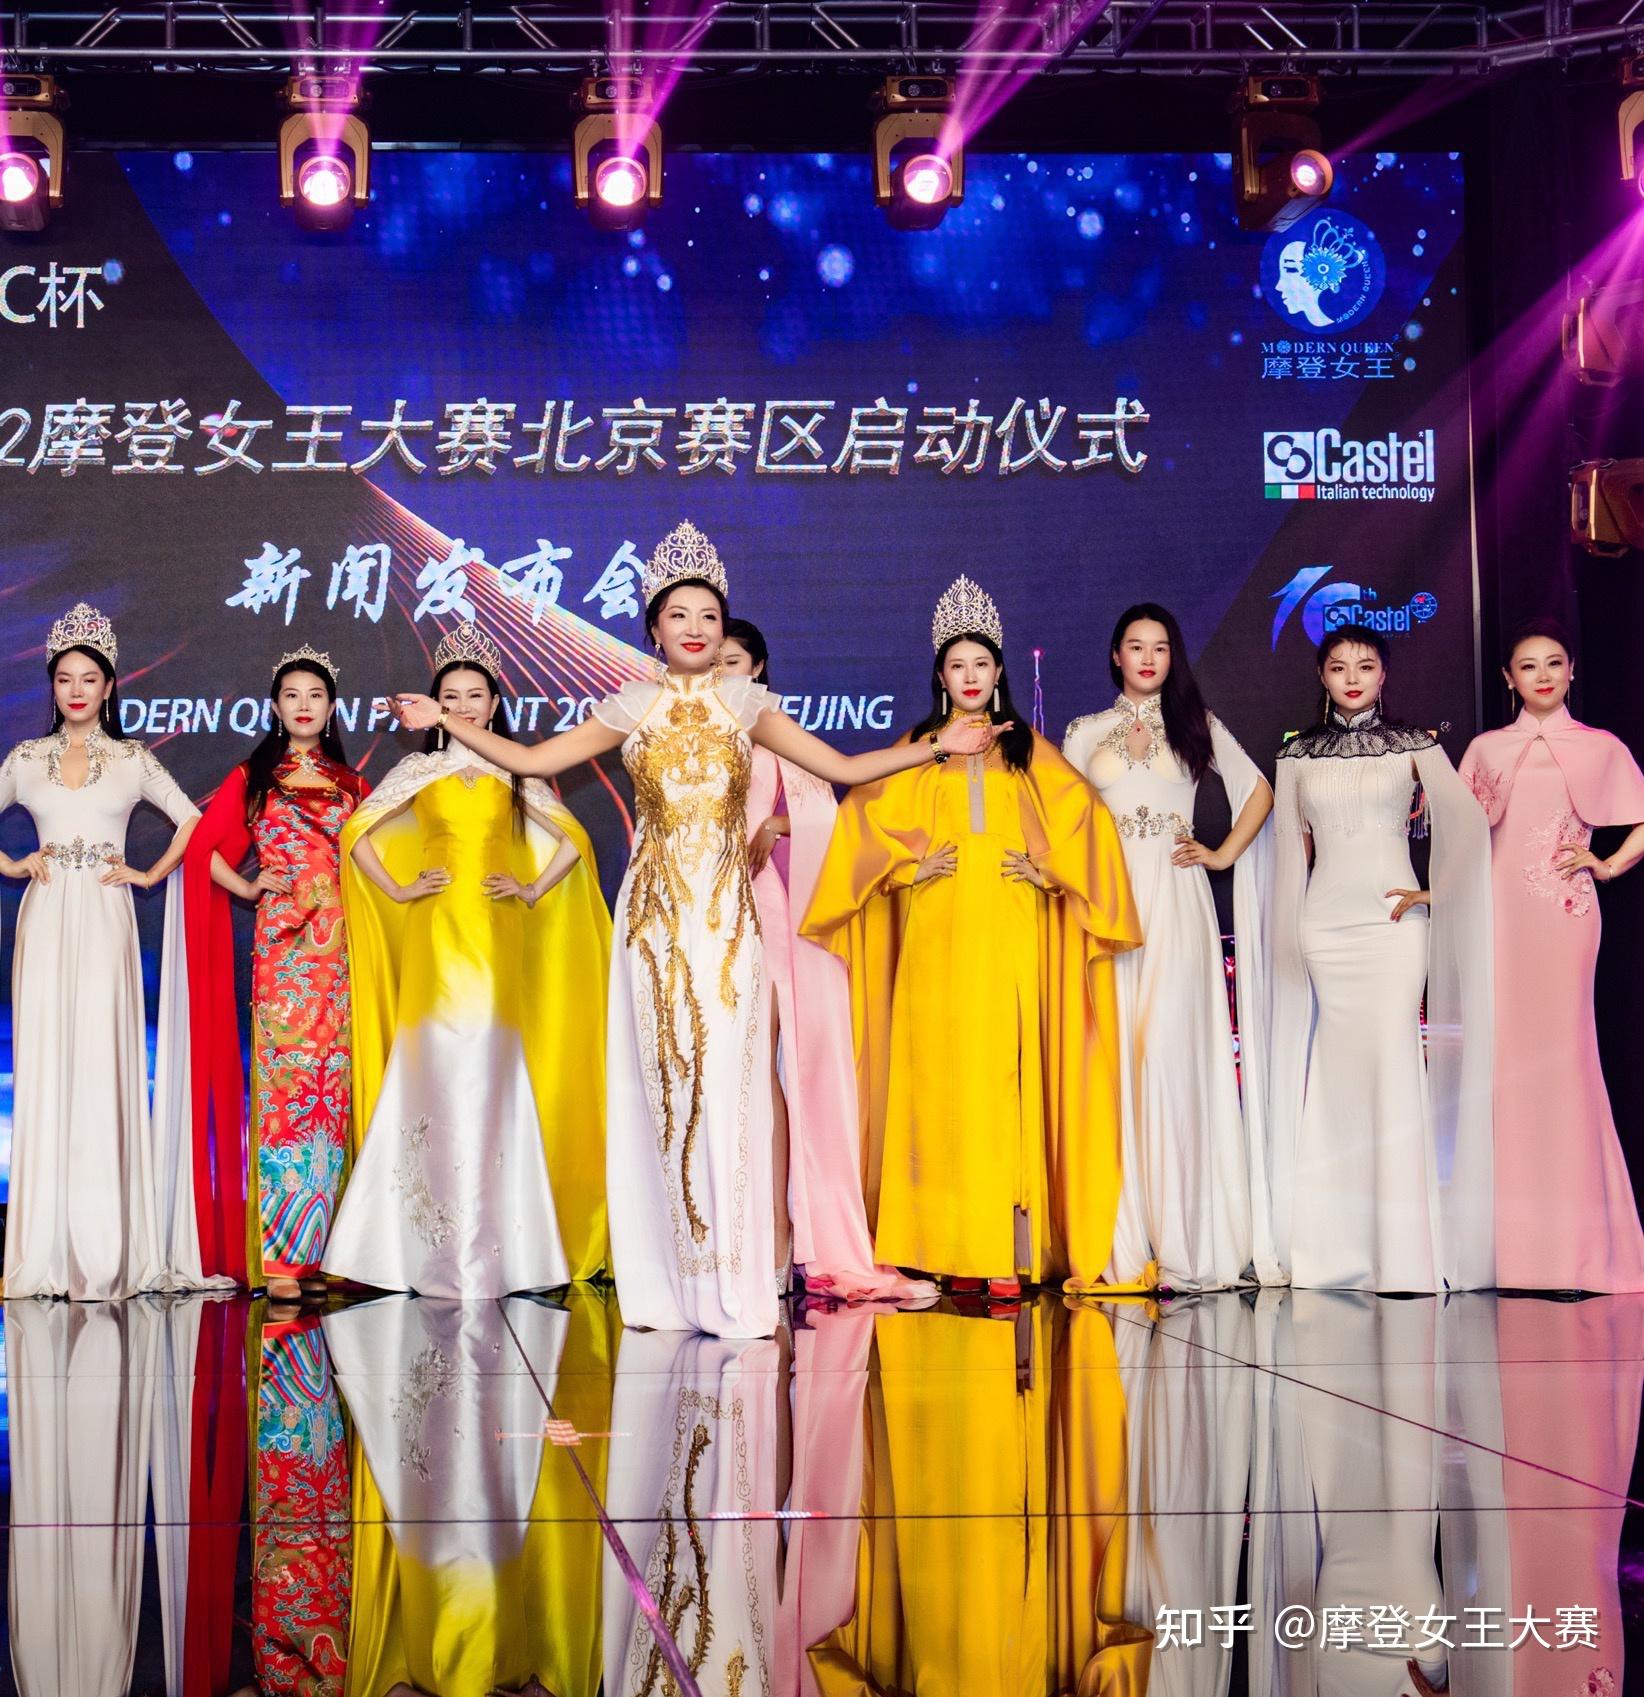 2122castelapac杯摩登女王大赛北京赛区正式启动新闻发布会